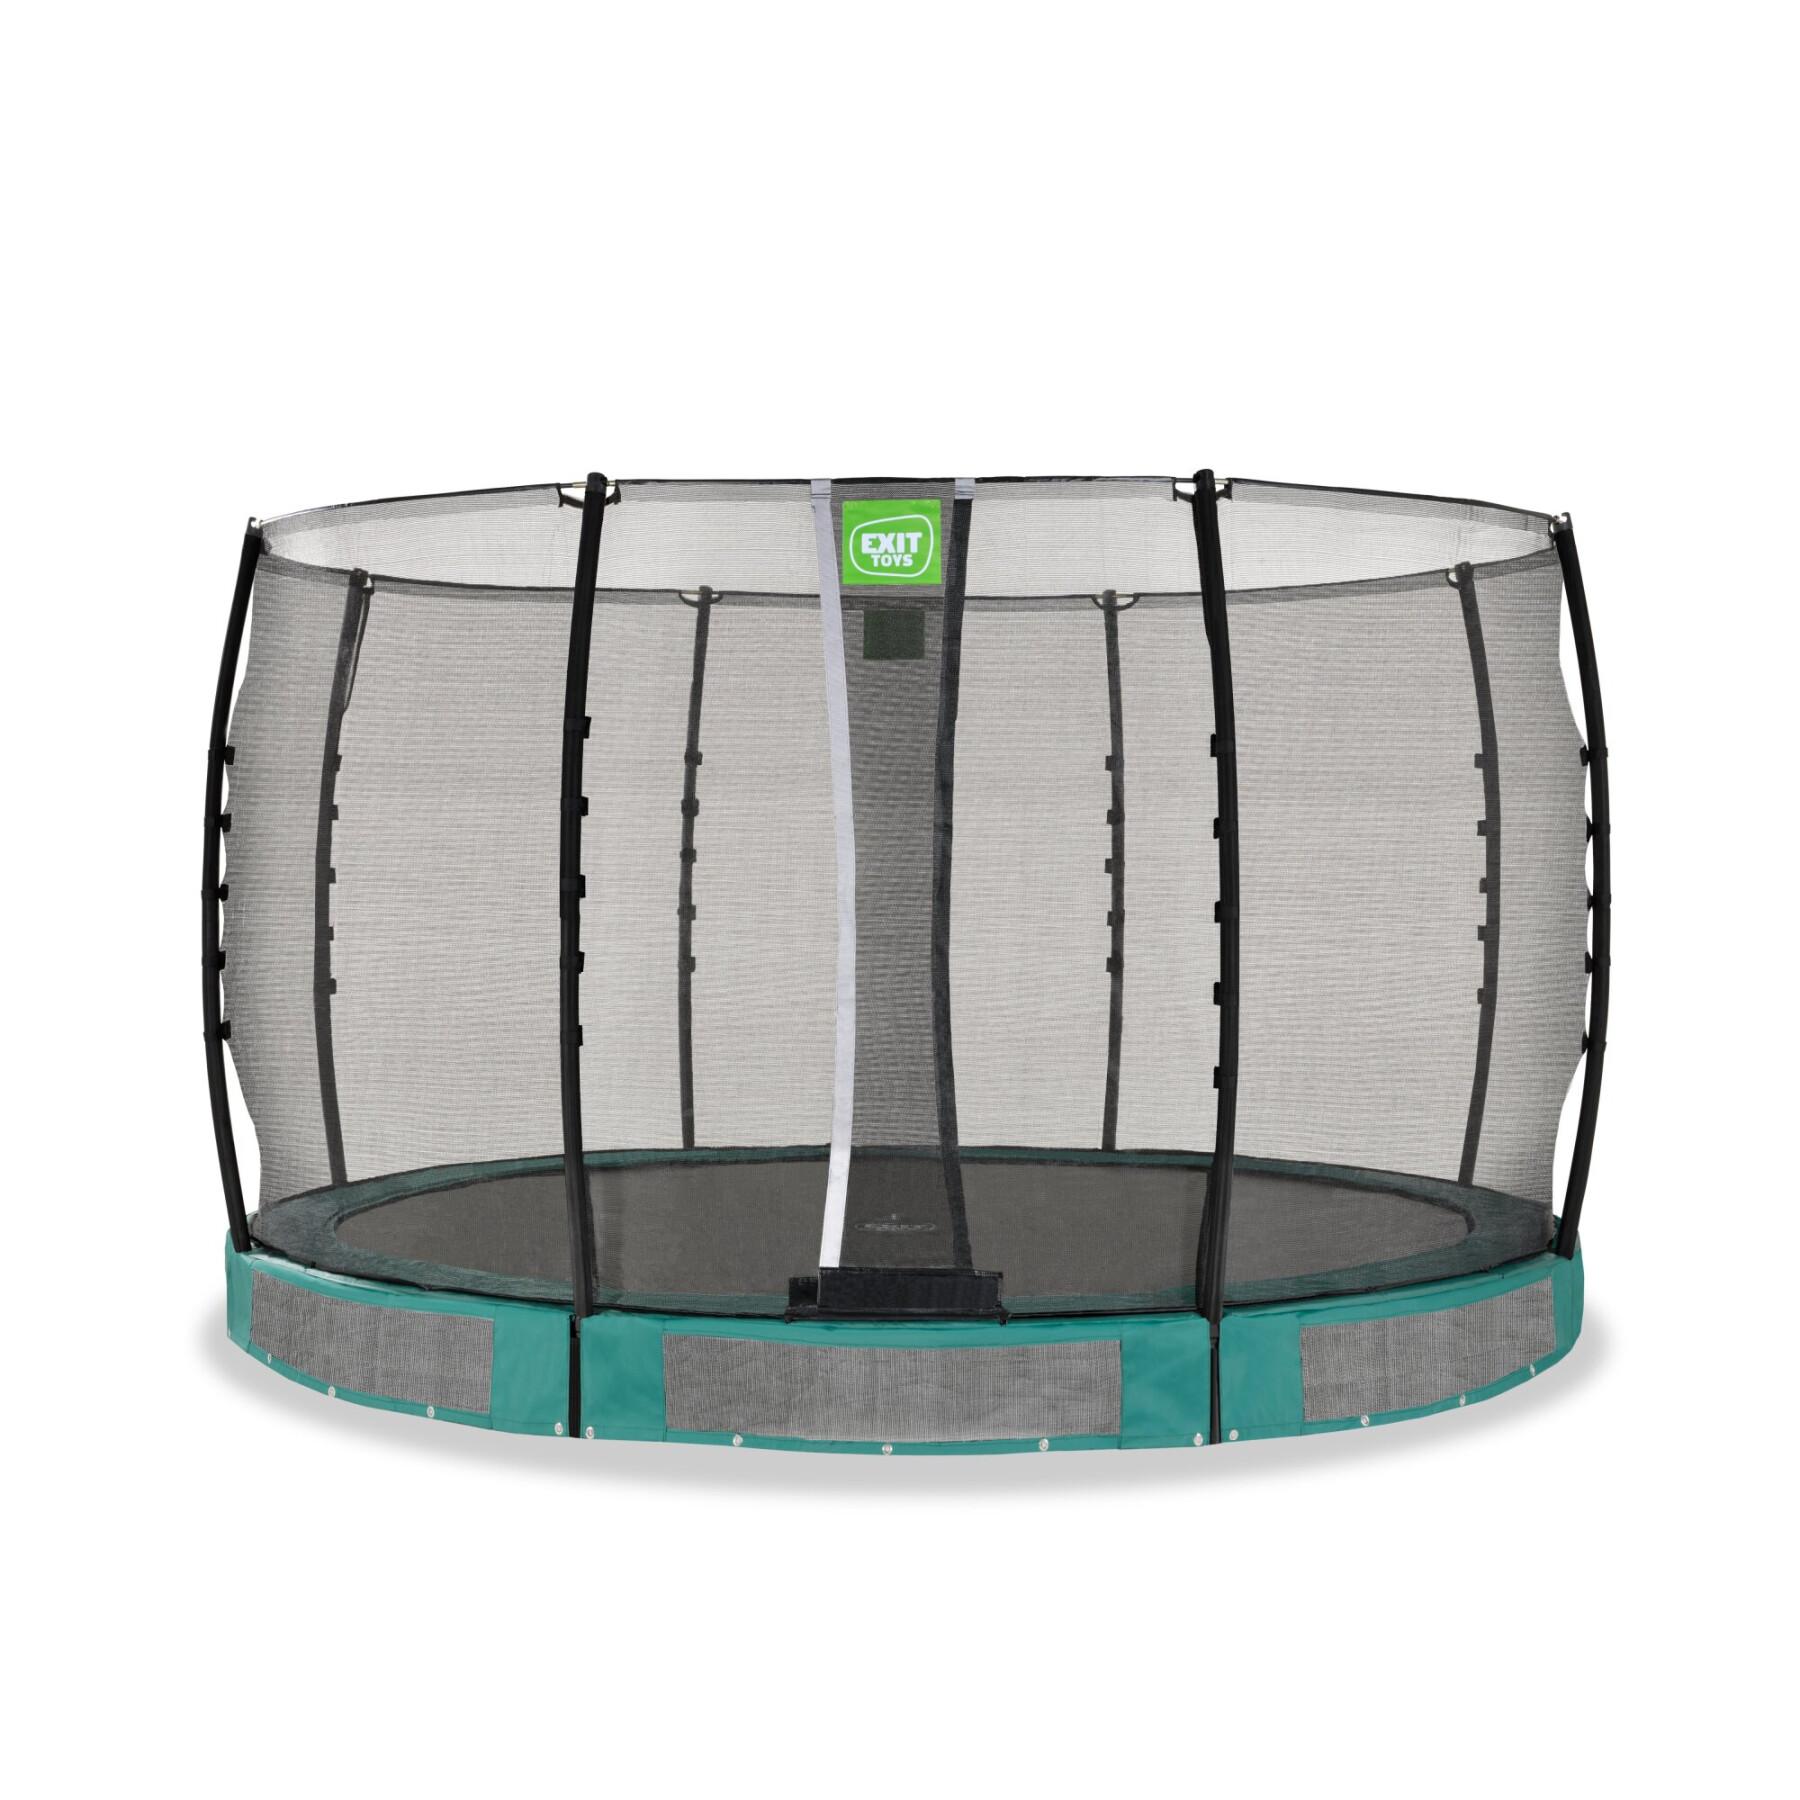 Ondergrondse trampoline Exit Toys Allure Classic 366 cm